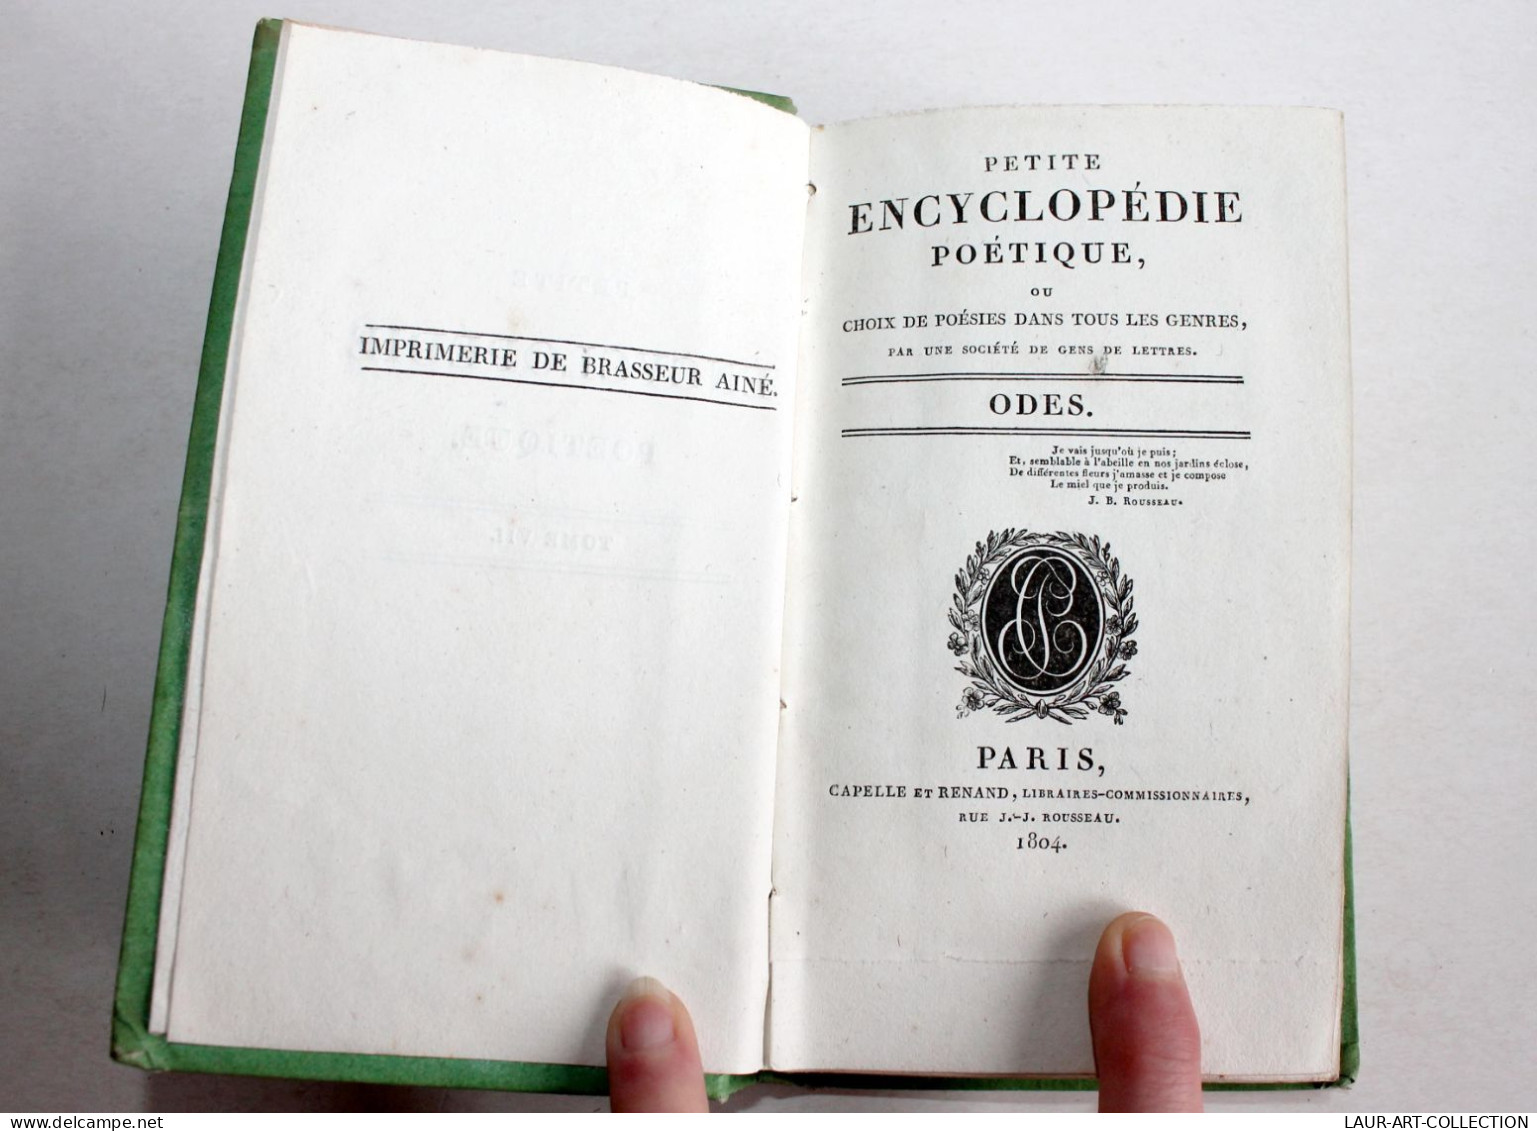 PETITE ENCYCLOPEDIE POETIQUE CHOIX POESIES TOUS GENRES CONTENANT 50 ODES 1804 T7 / ANCIEN LIVRE XIXe SIECLE (1803.184) - Autores Franceses